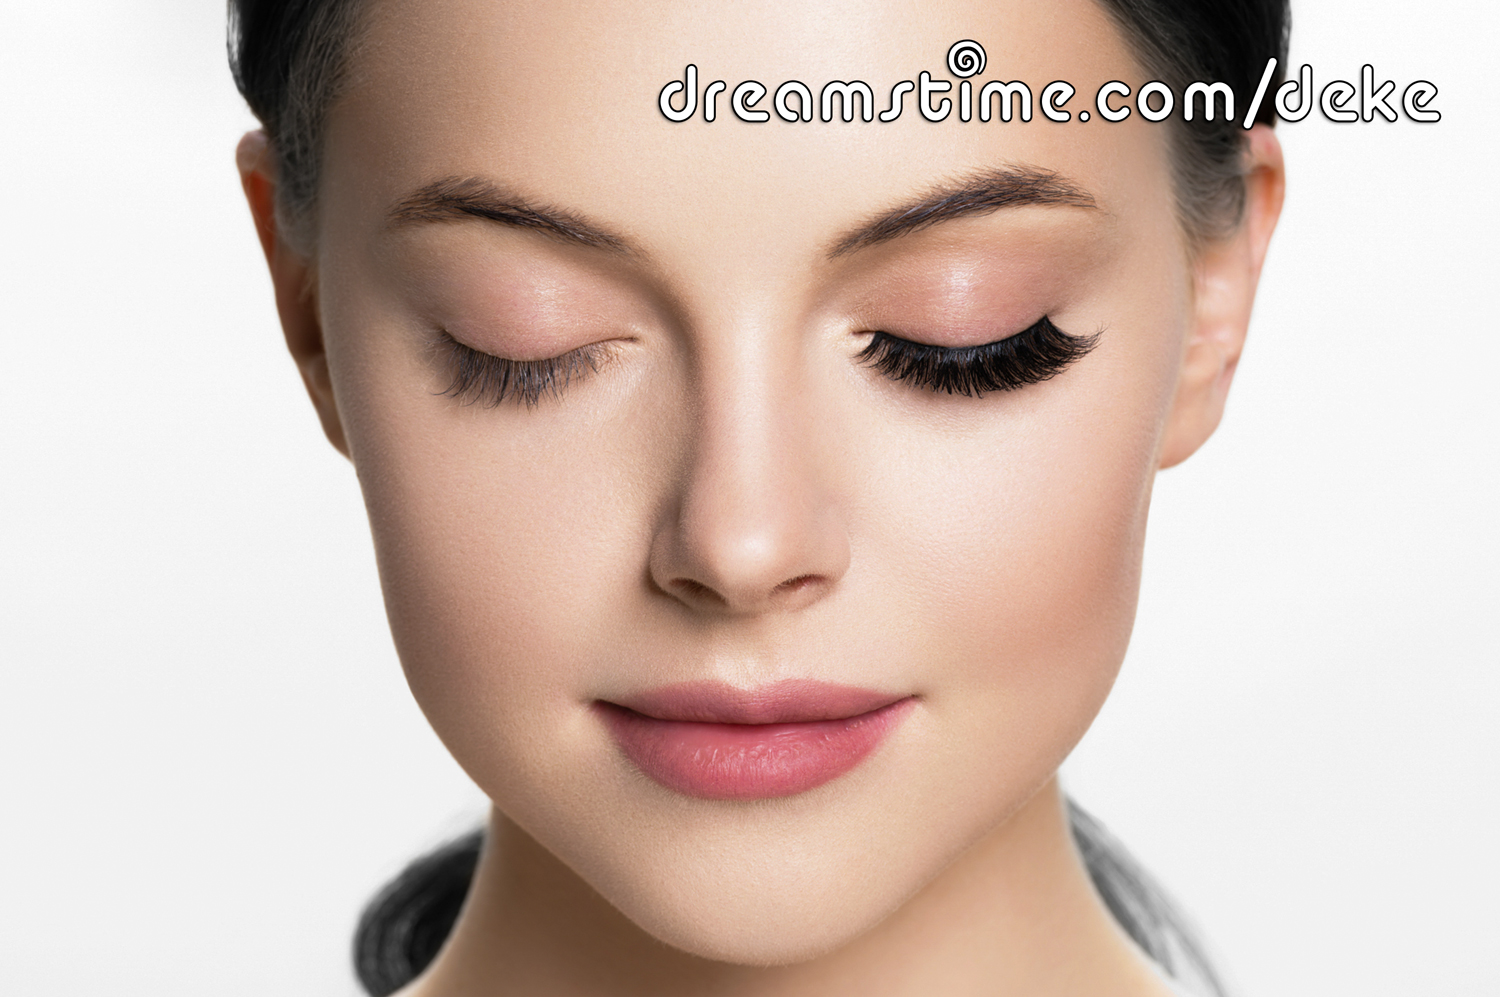 Dreamstime image #134292799, woman with one false eyelash